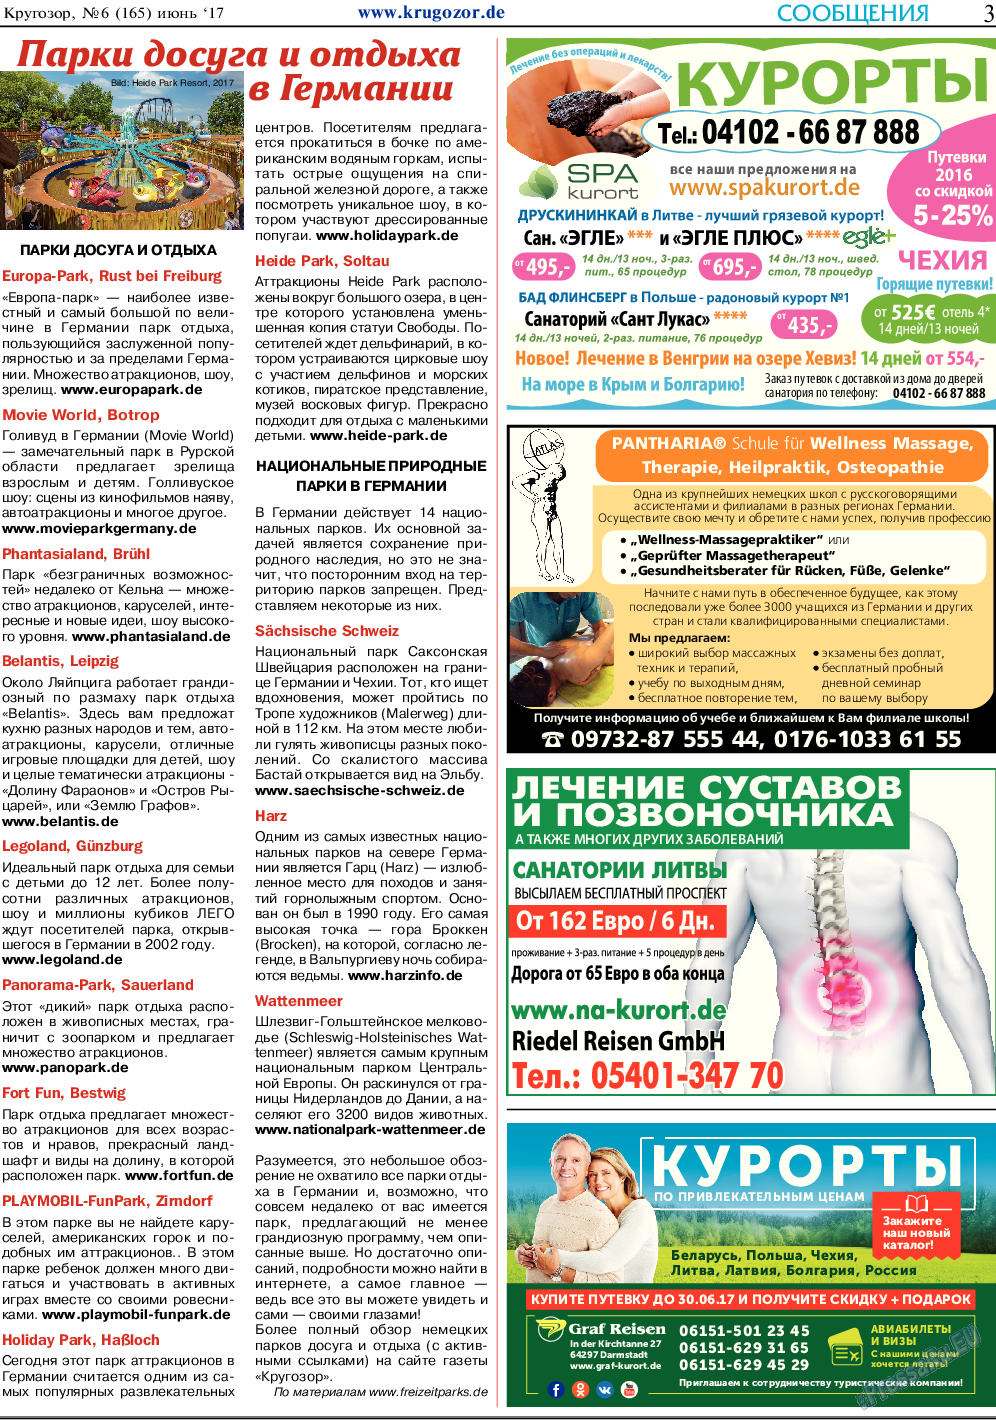 Кругозор, газета. 2017 №6 стр.3